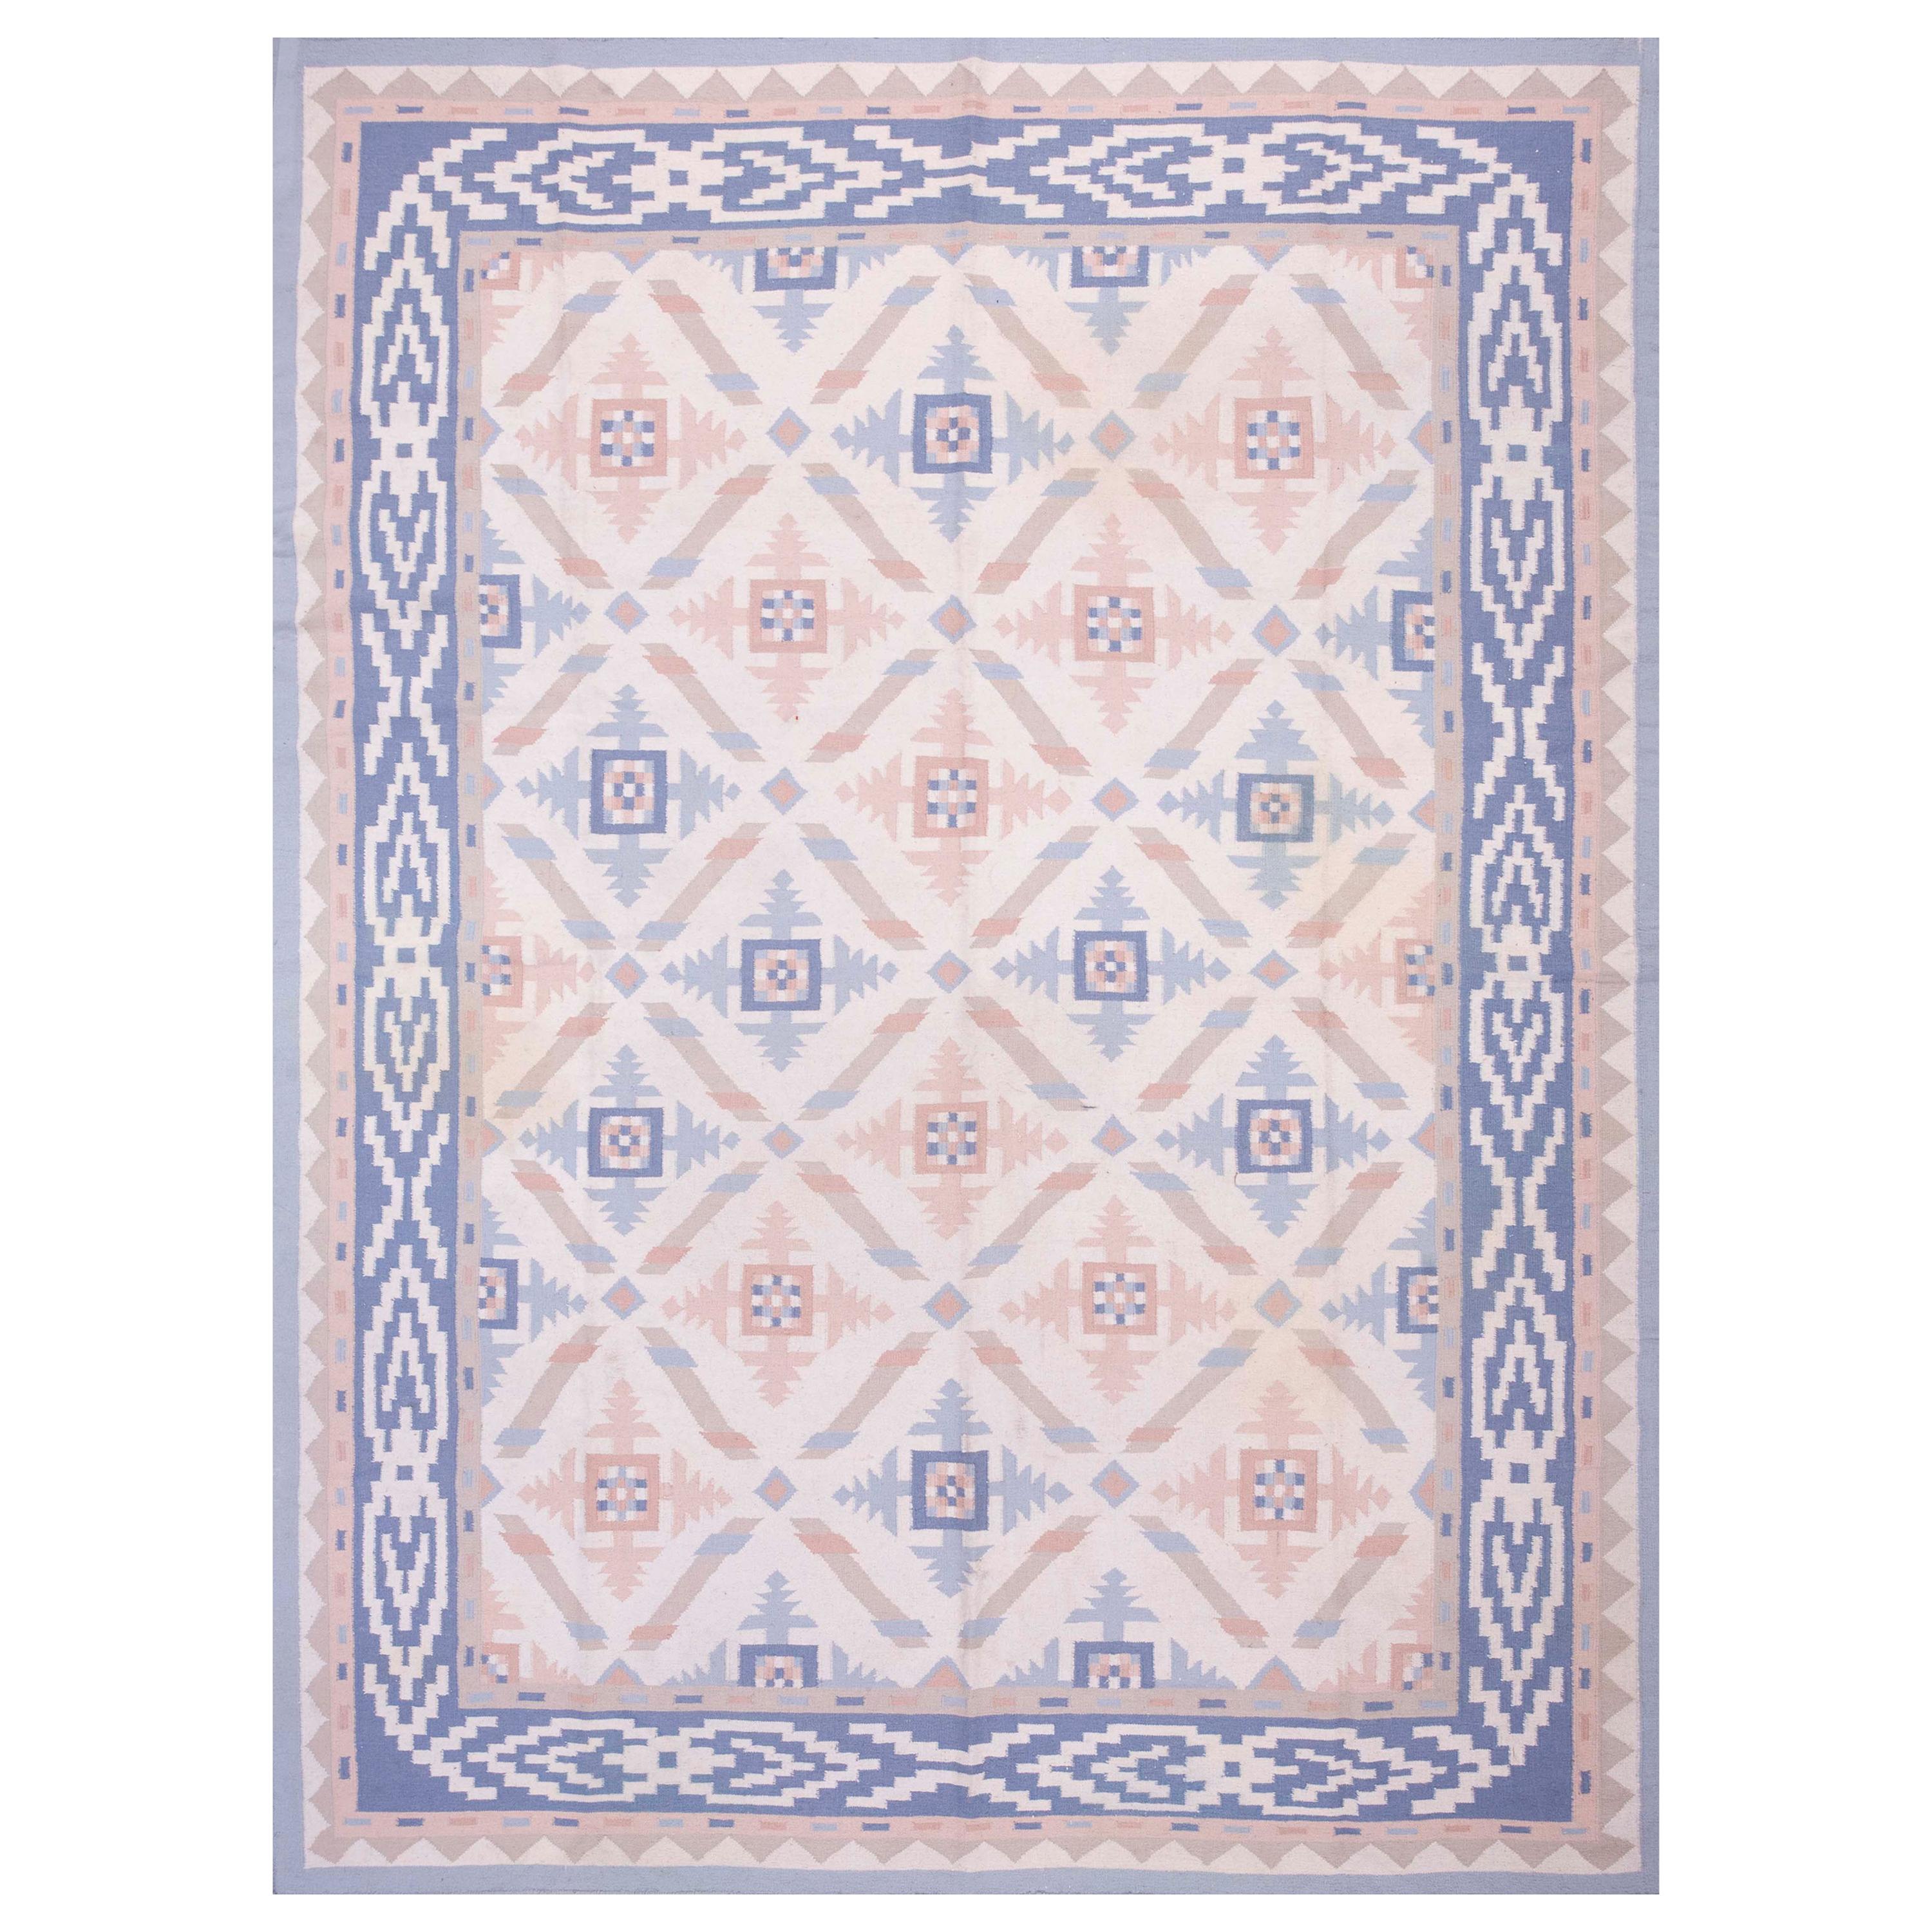 Vintage 1970s Wool Indian Dhurrie Carpet ( 8'8" x 11'4" - 265 x 345 )